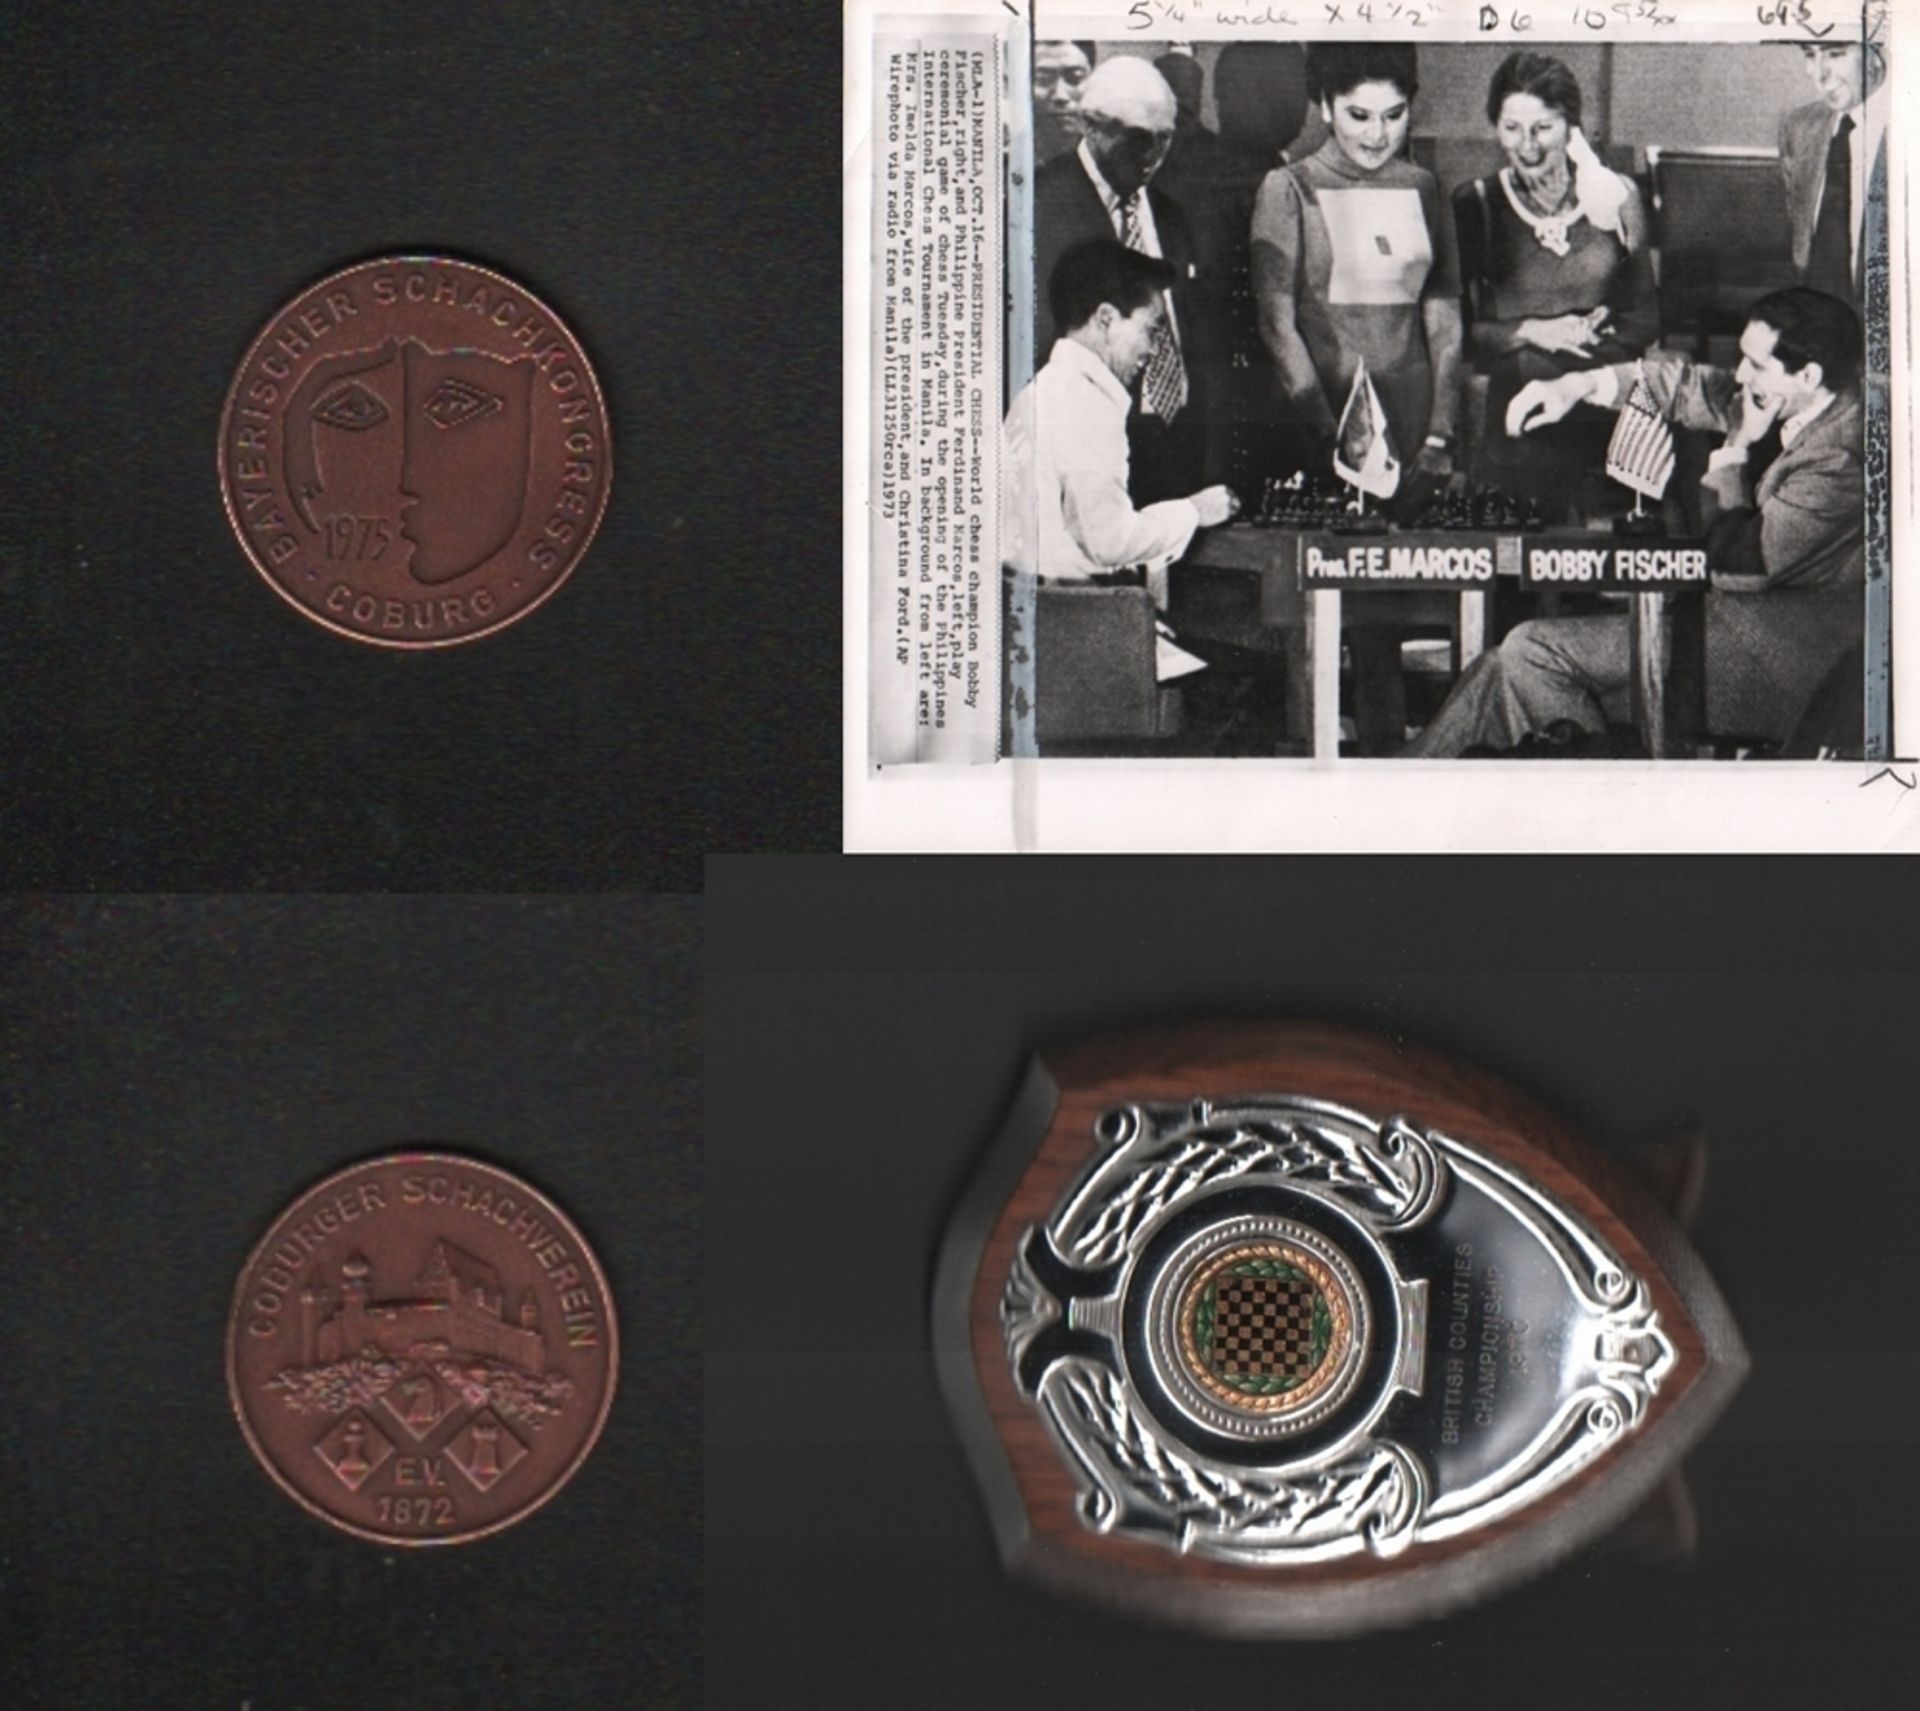 Medaille aus Bronze zum Bayerischen Schachkongress in Coburg 1975. Arbeit von B. H. Mayer, - Image 2 of 2